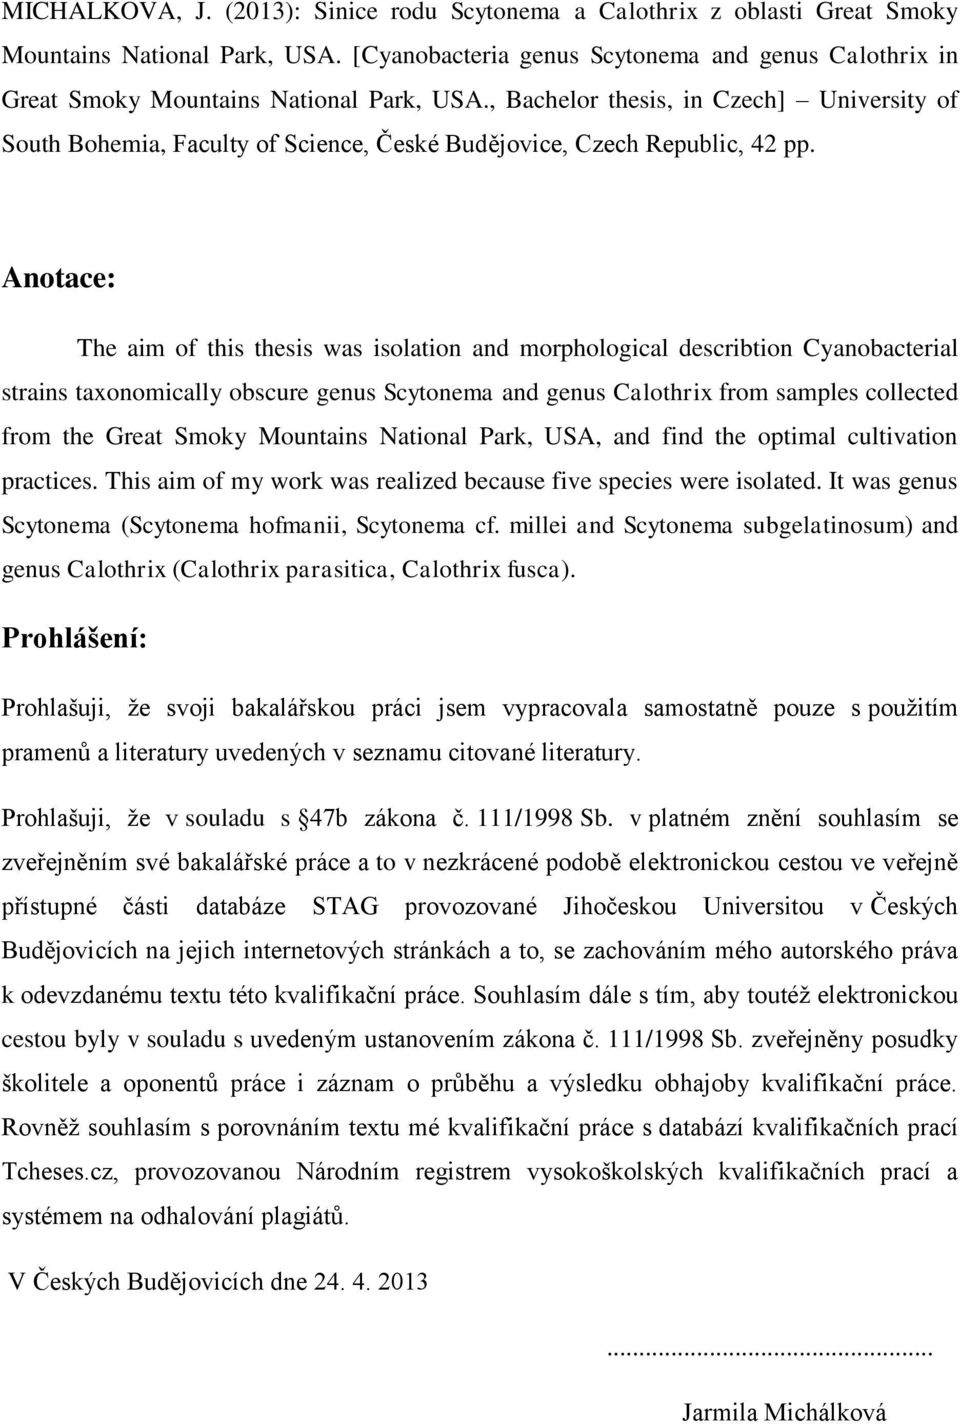 , Bachelor thesis, in Czech] University of South Bohemia, Faculty of Science, České Budějovice, Czech Republic, 42 pp.